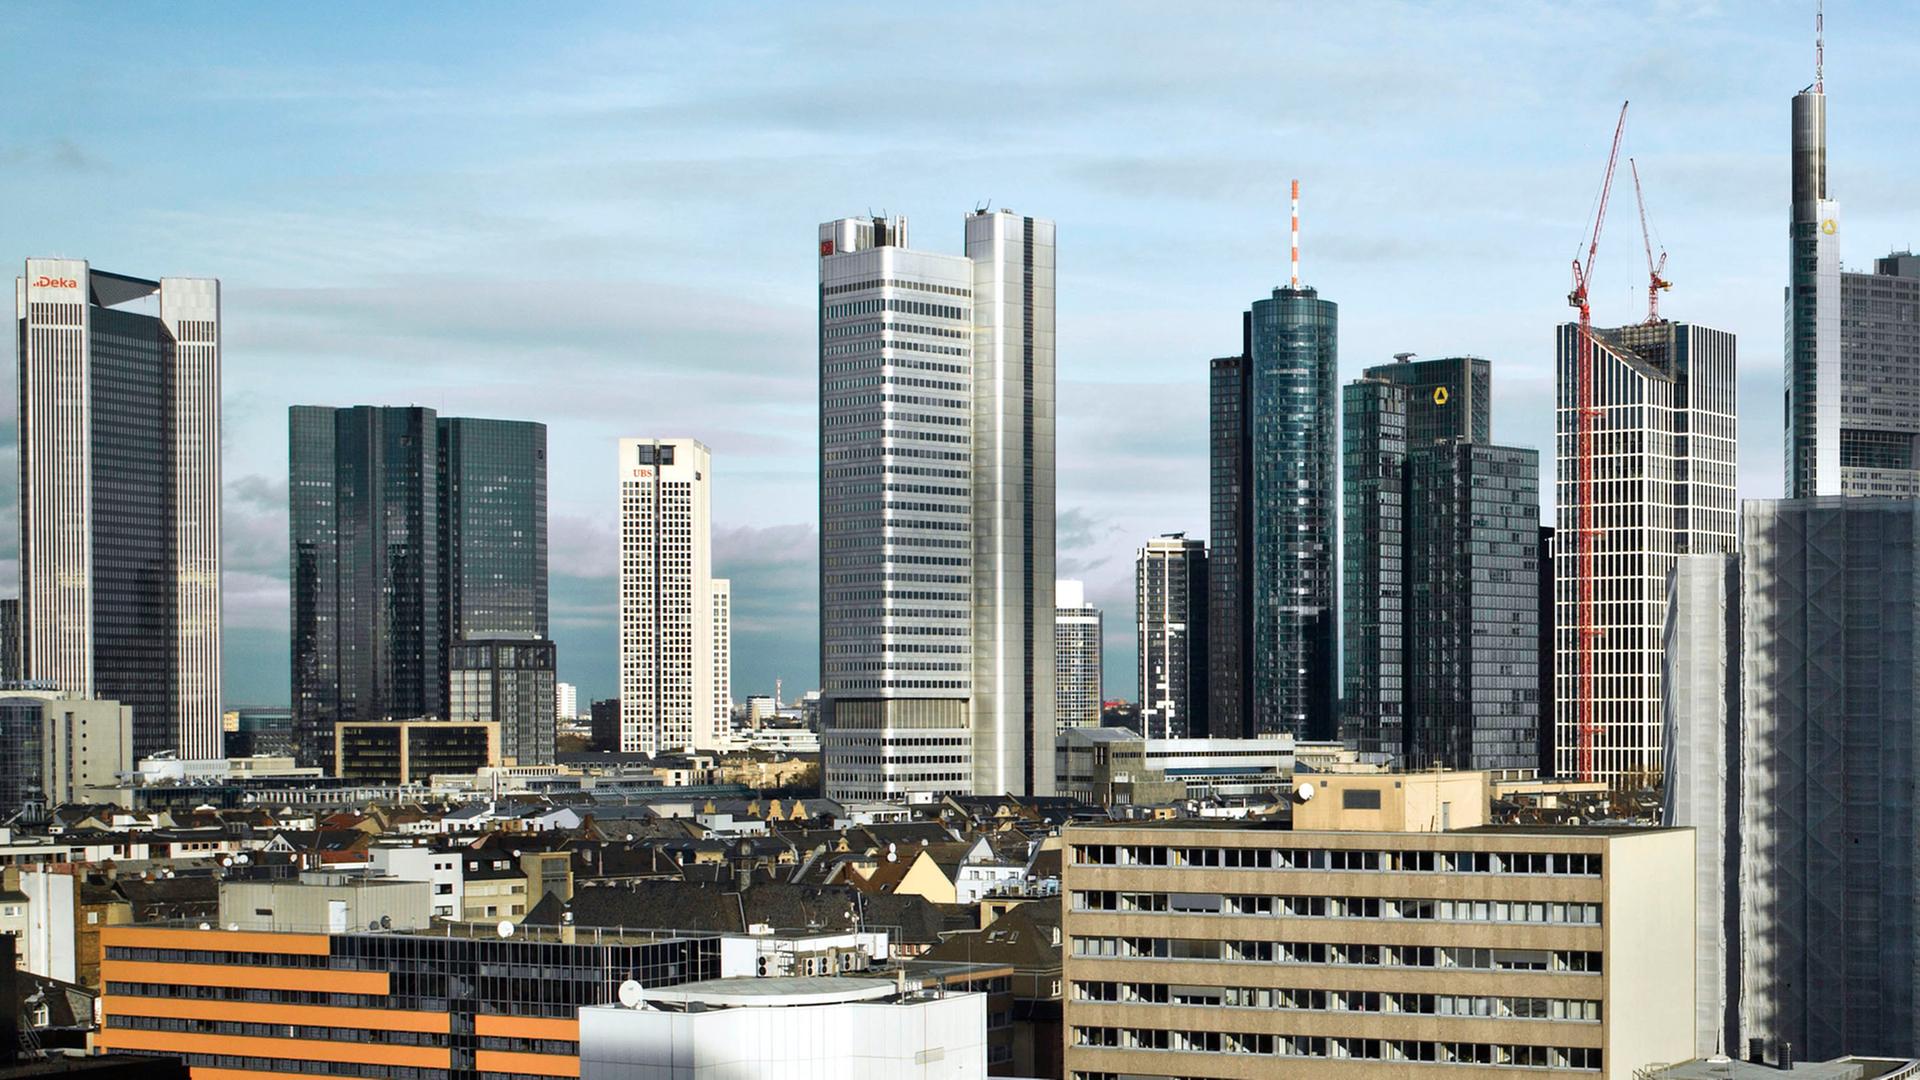 Die Skyline von Frankfurt am Main (Hessen) mit ihren vielen Bankentürmen.